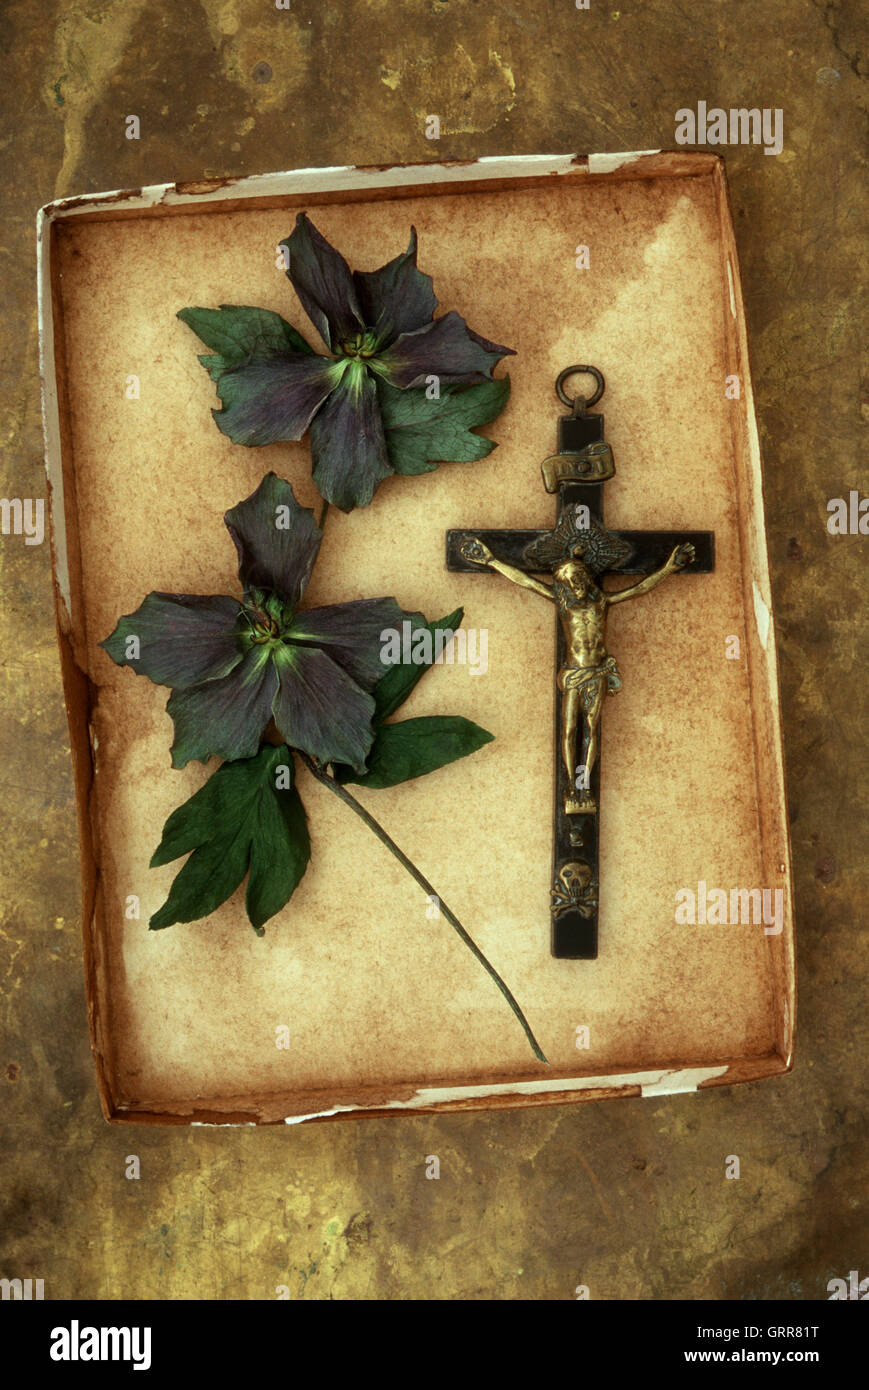 Plateau en carton coloré contenant des crucifix et des fleurs violettes de Lenten rose ou Helleborus orientalis Banque D'Images